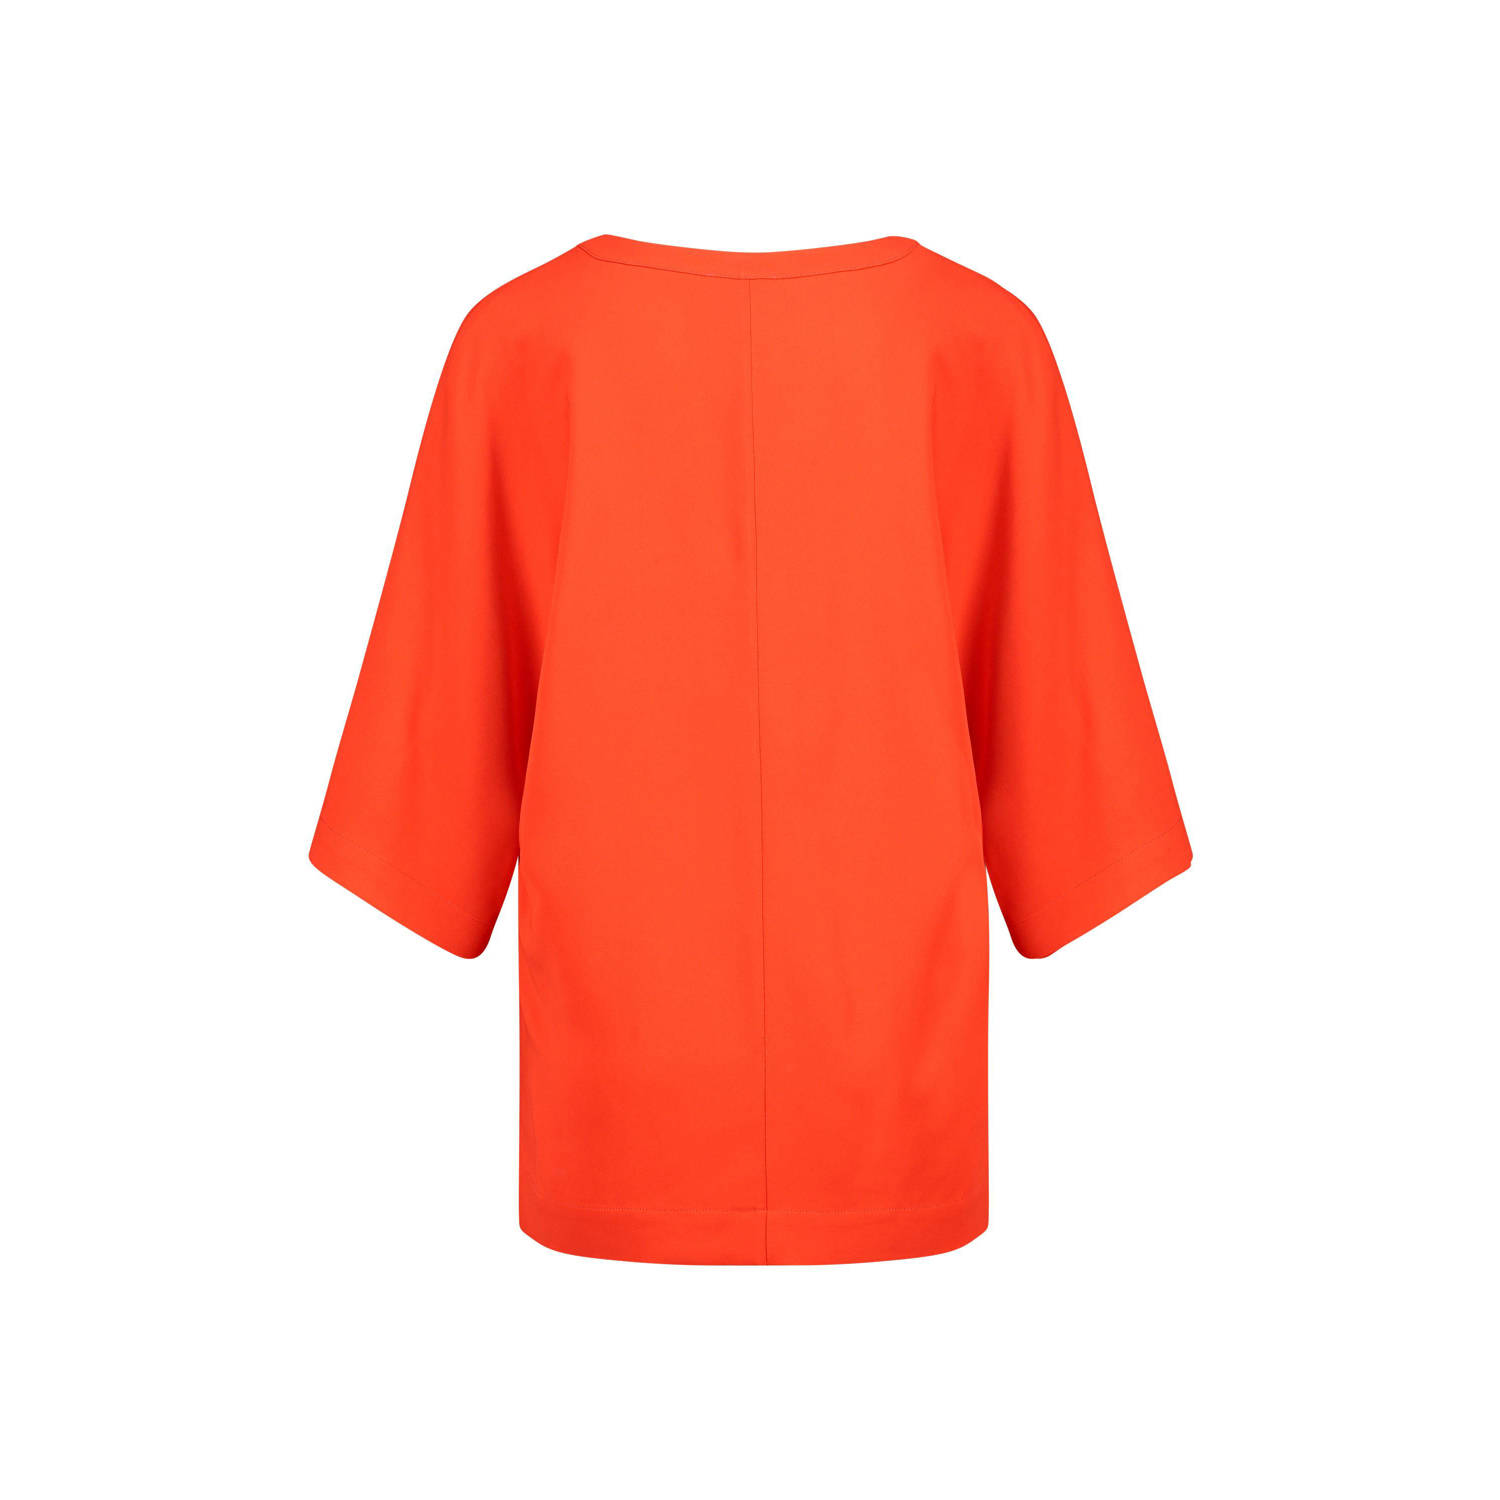 Claudia Sträter blousetop oranjerood